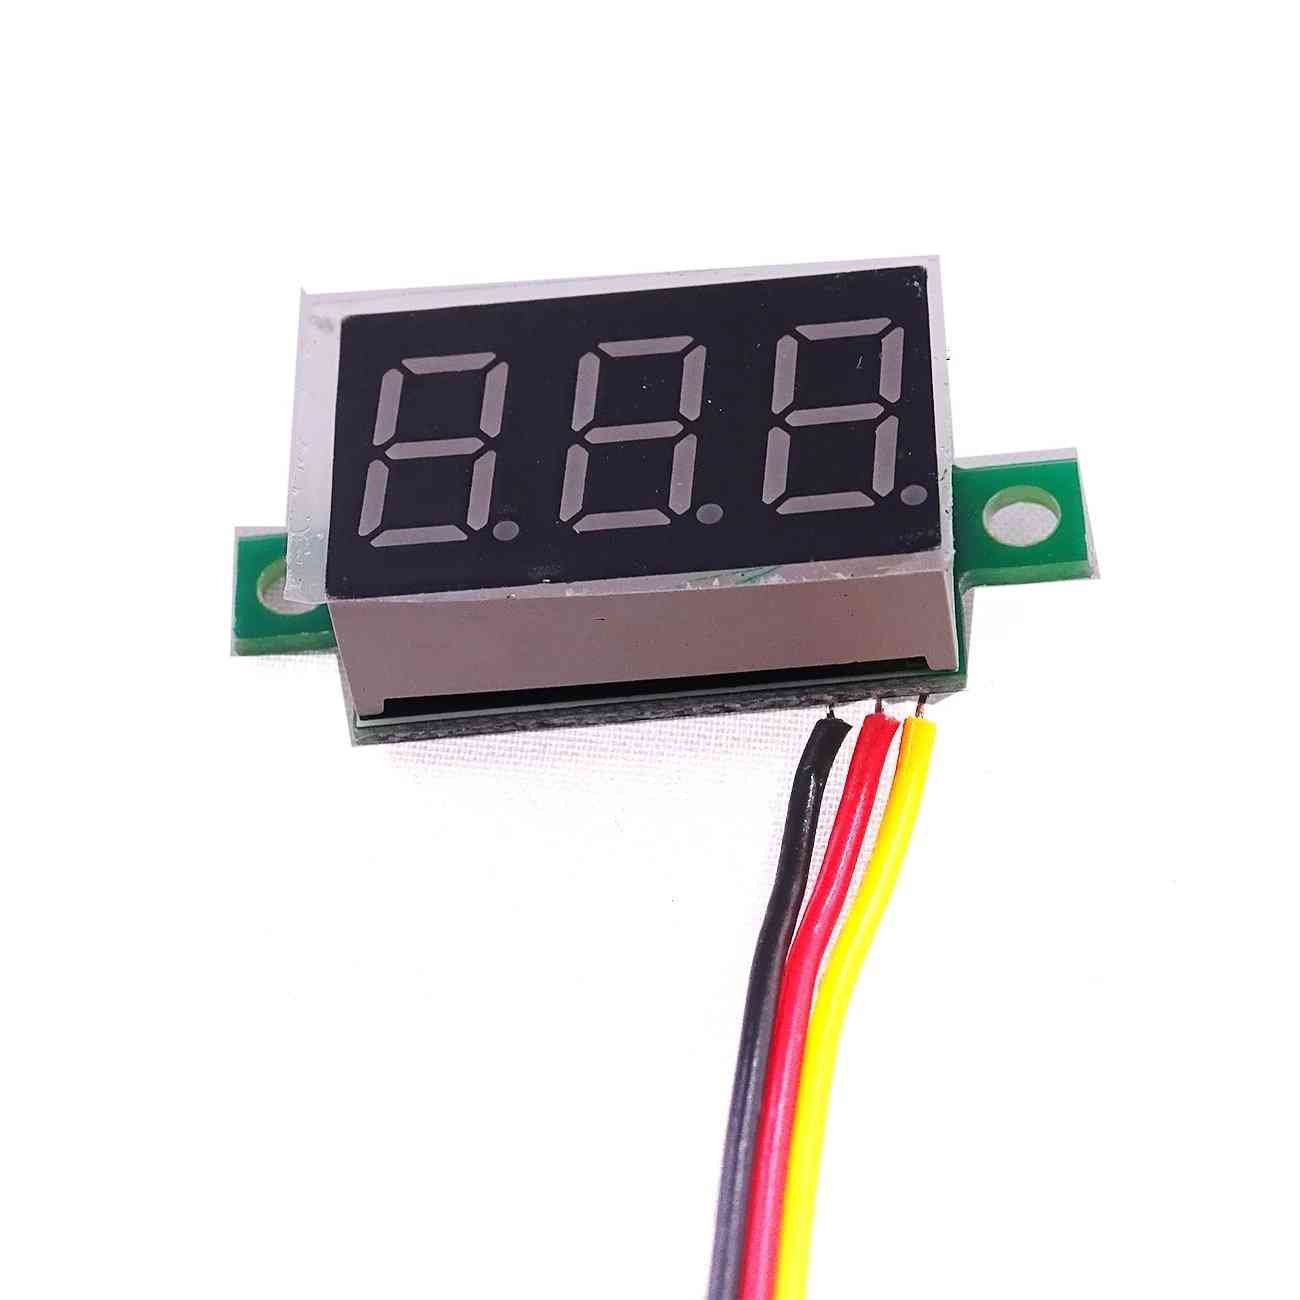 3-bits Digital Led Display, Panel Voltage, Meter Tester